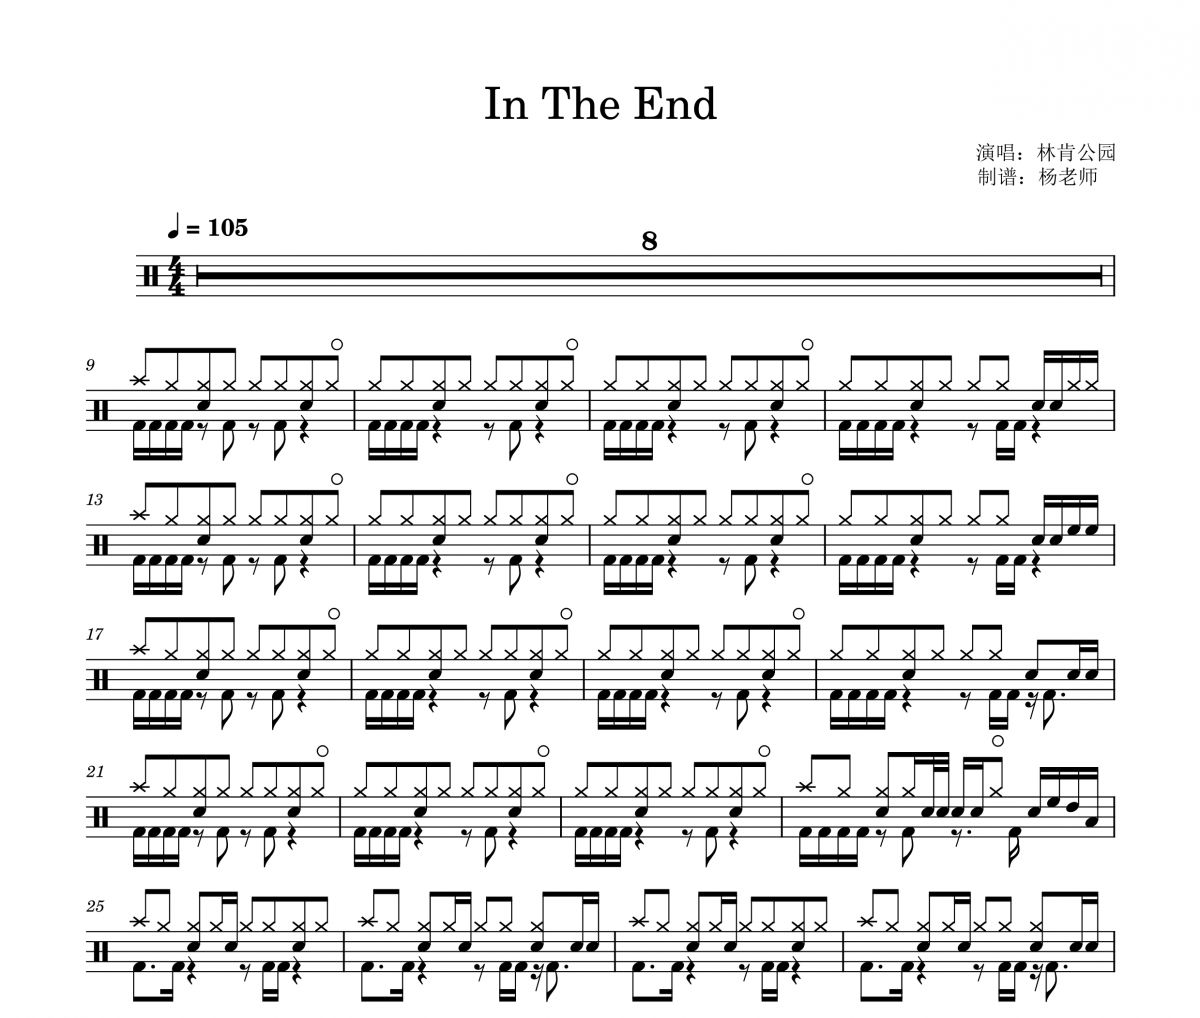 林肯公园《In The End》架子鼓|爵士鼓|鼓谱 杨老师制谱